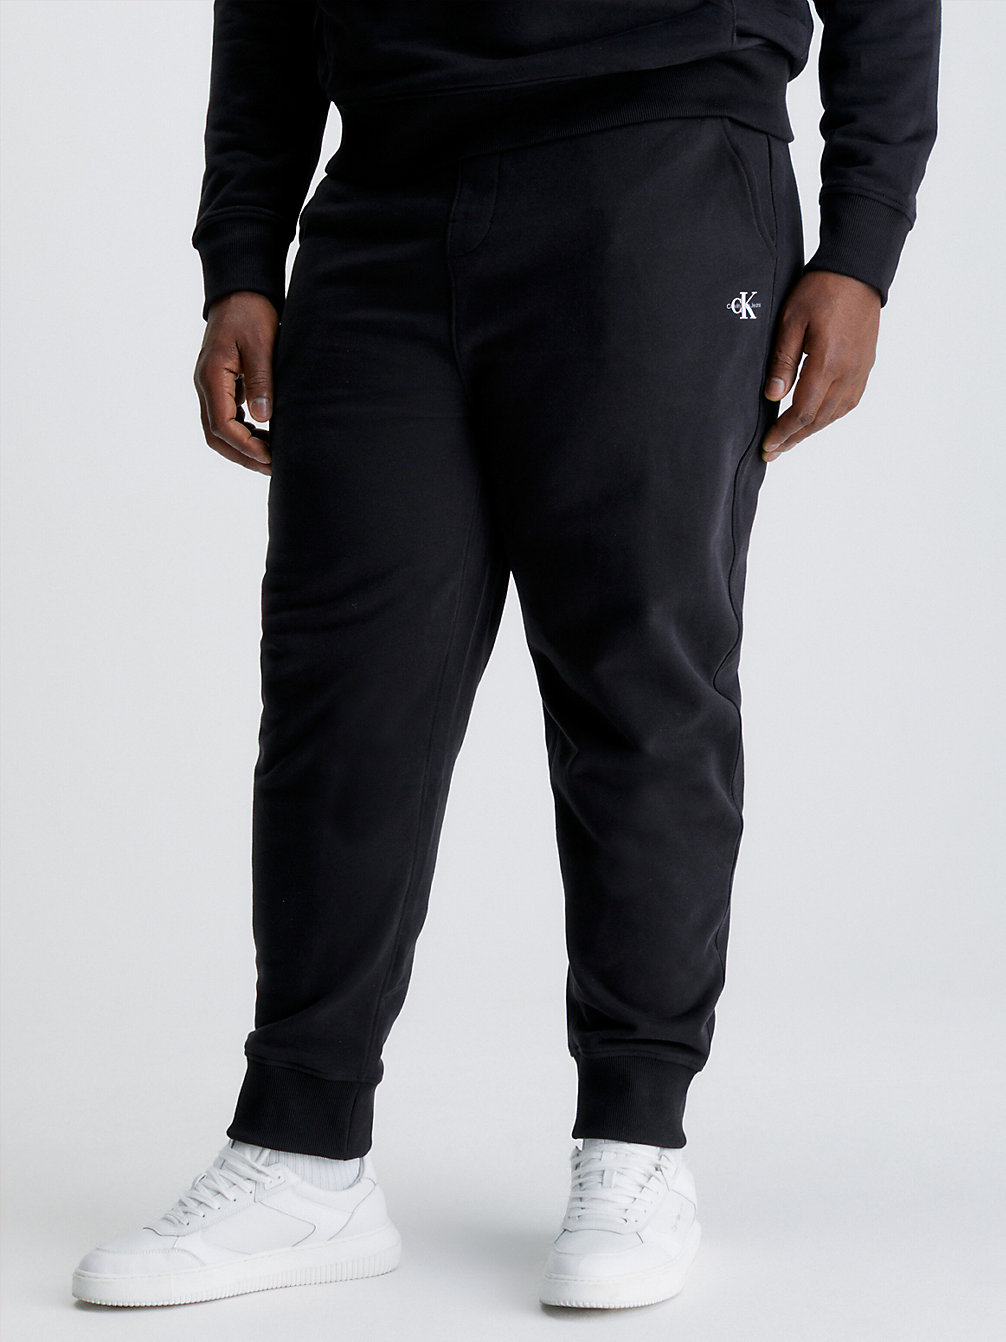 CK BLACK > Spodnie Dresowe Z Monogramem Plus Size > undefined Mężczyźni - Calvin Klein